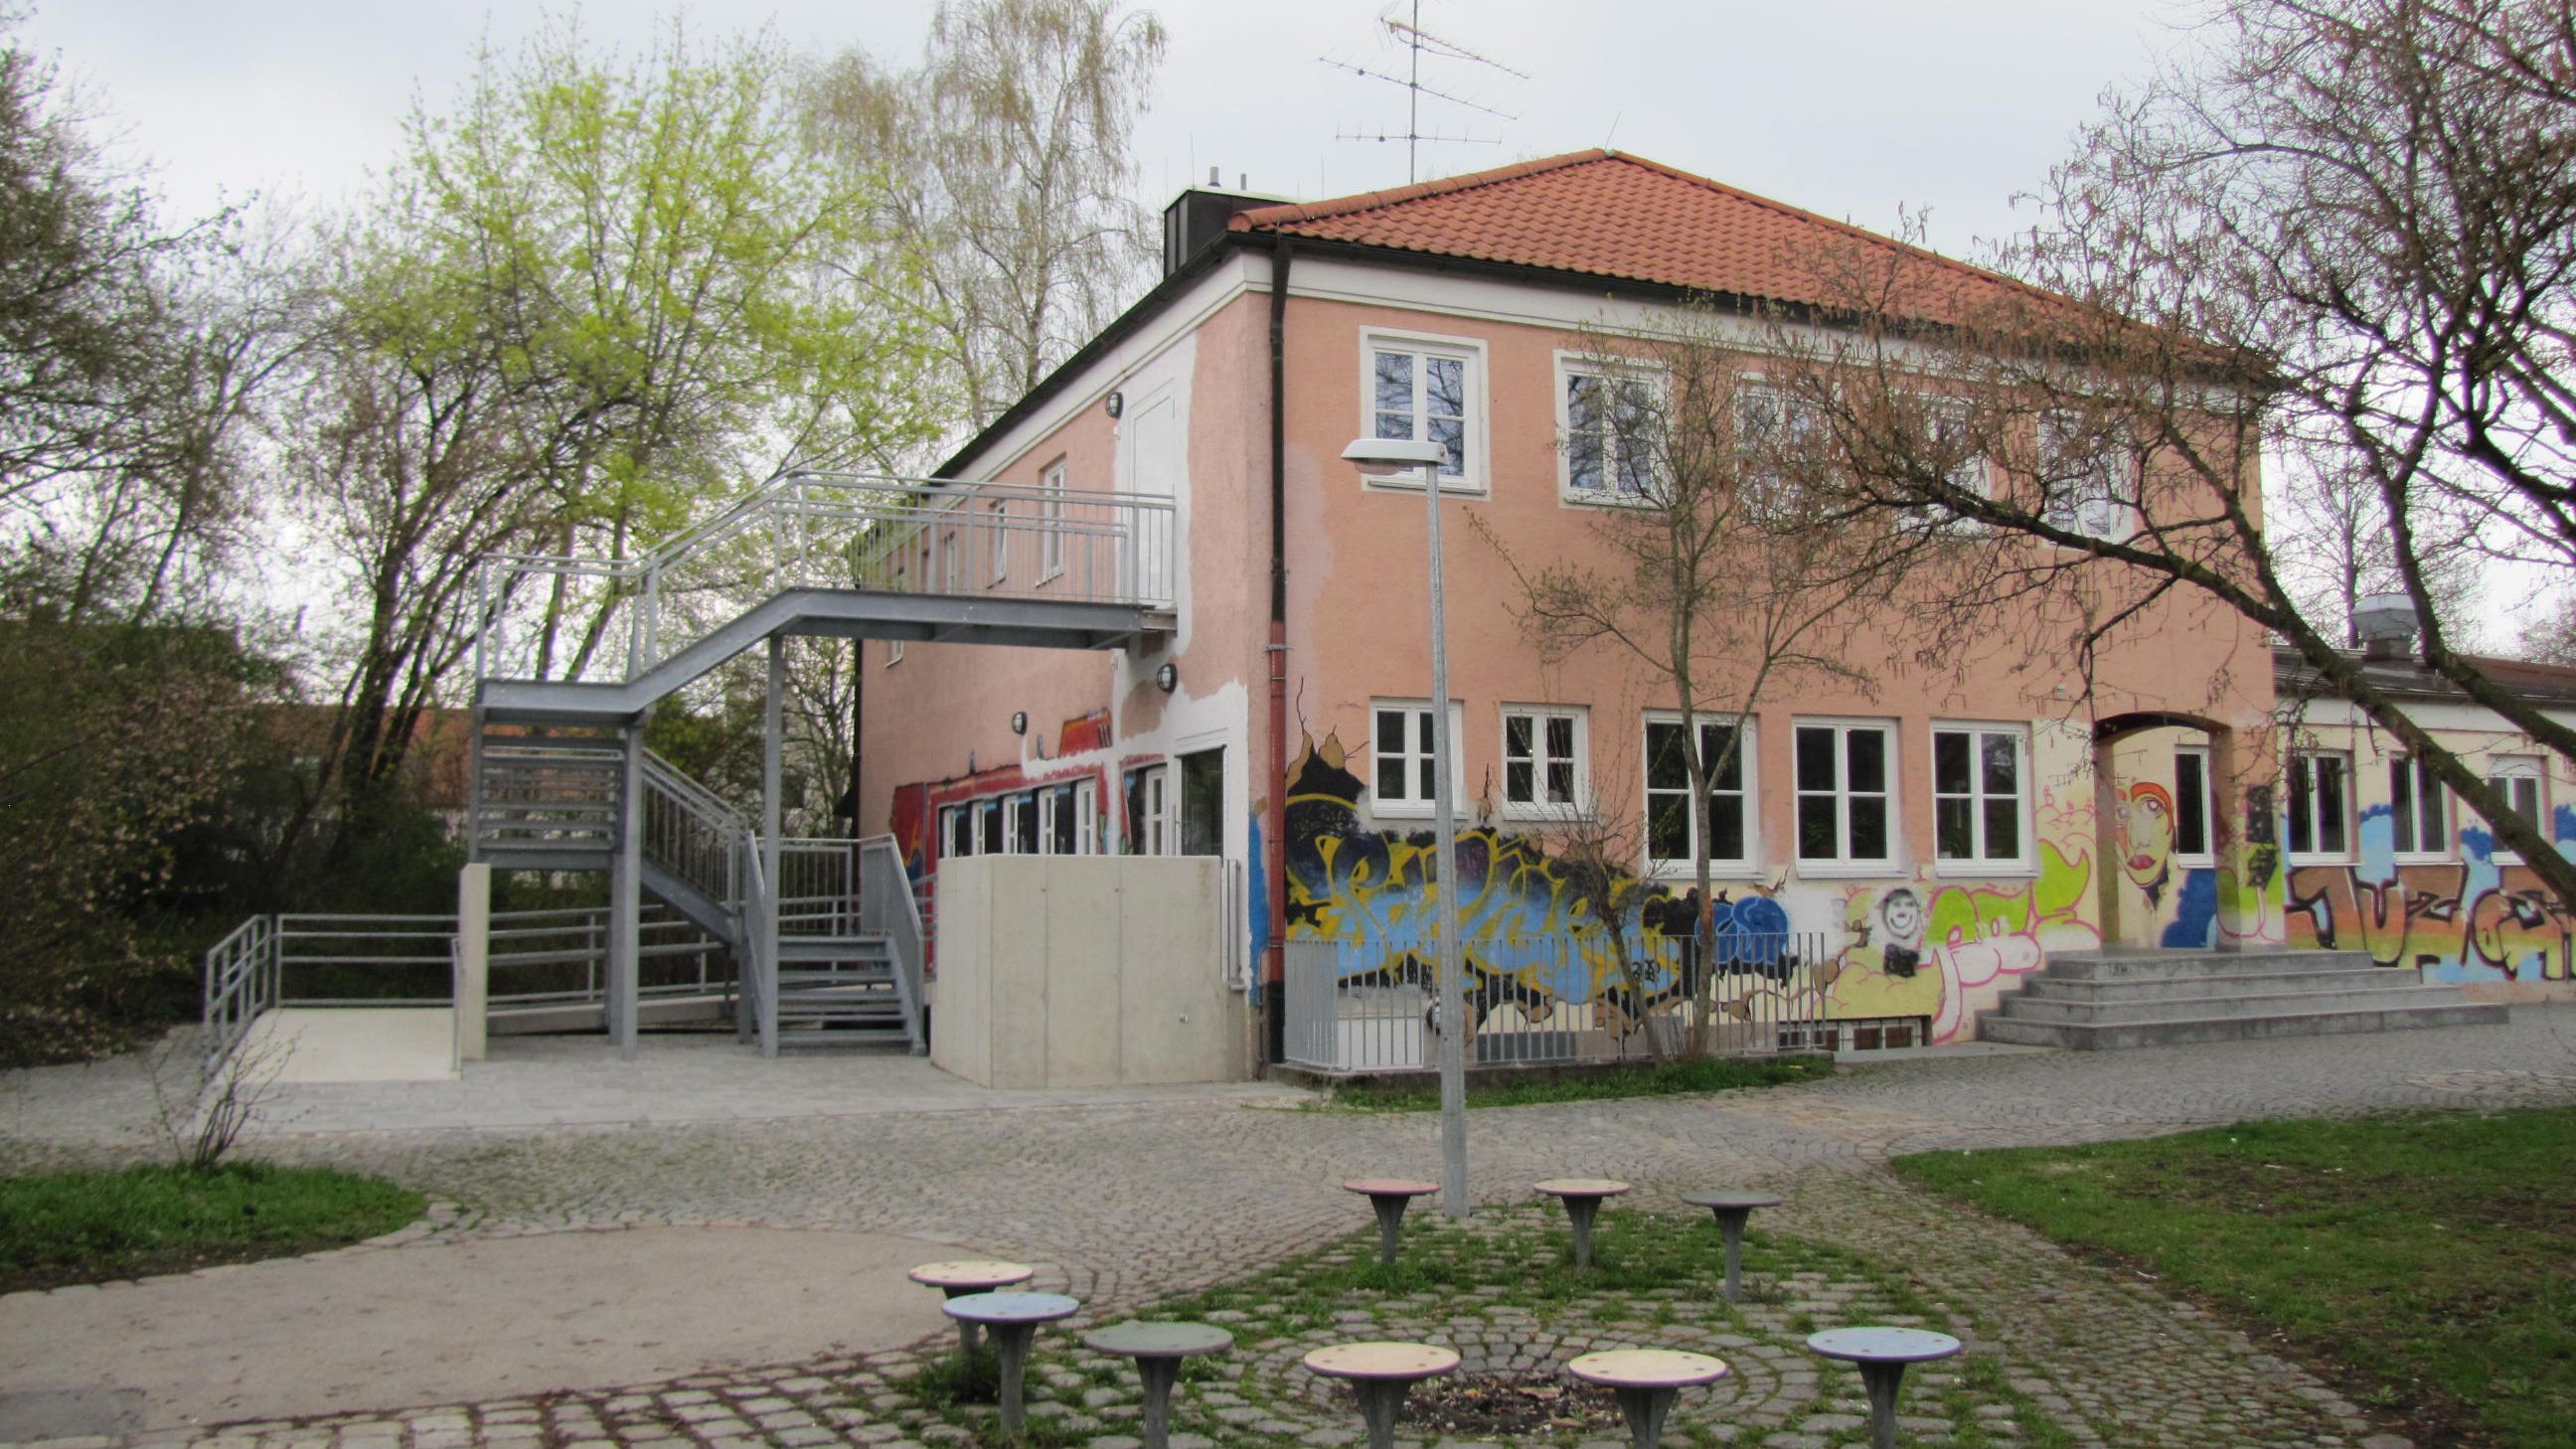 Jugendzentrum Ost mit Graffitifassade und Sitzmöglichkeiten im Vordergrund